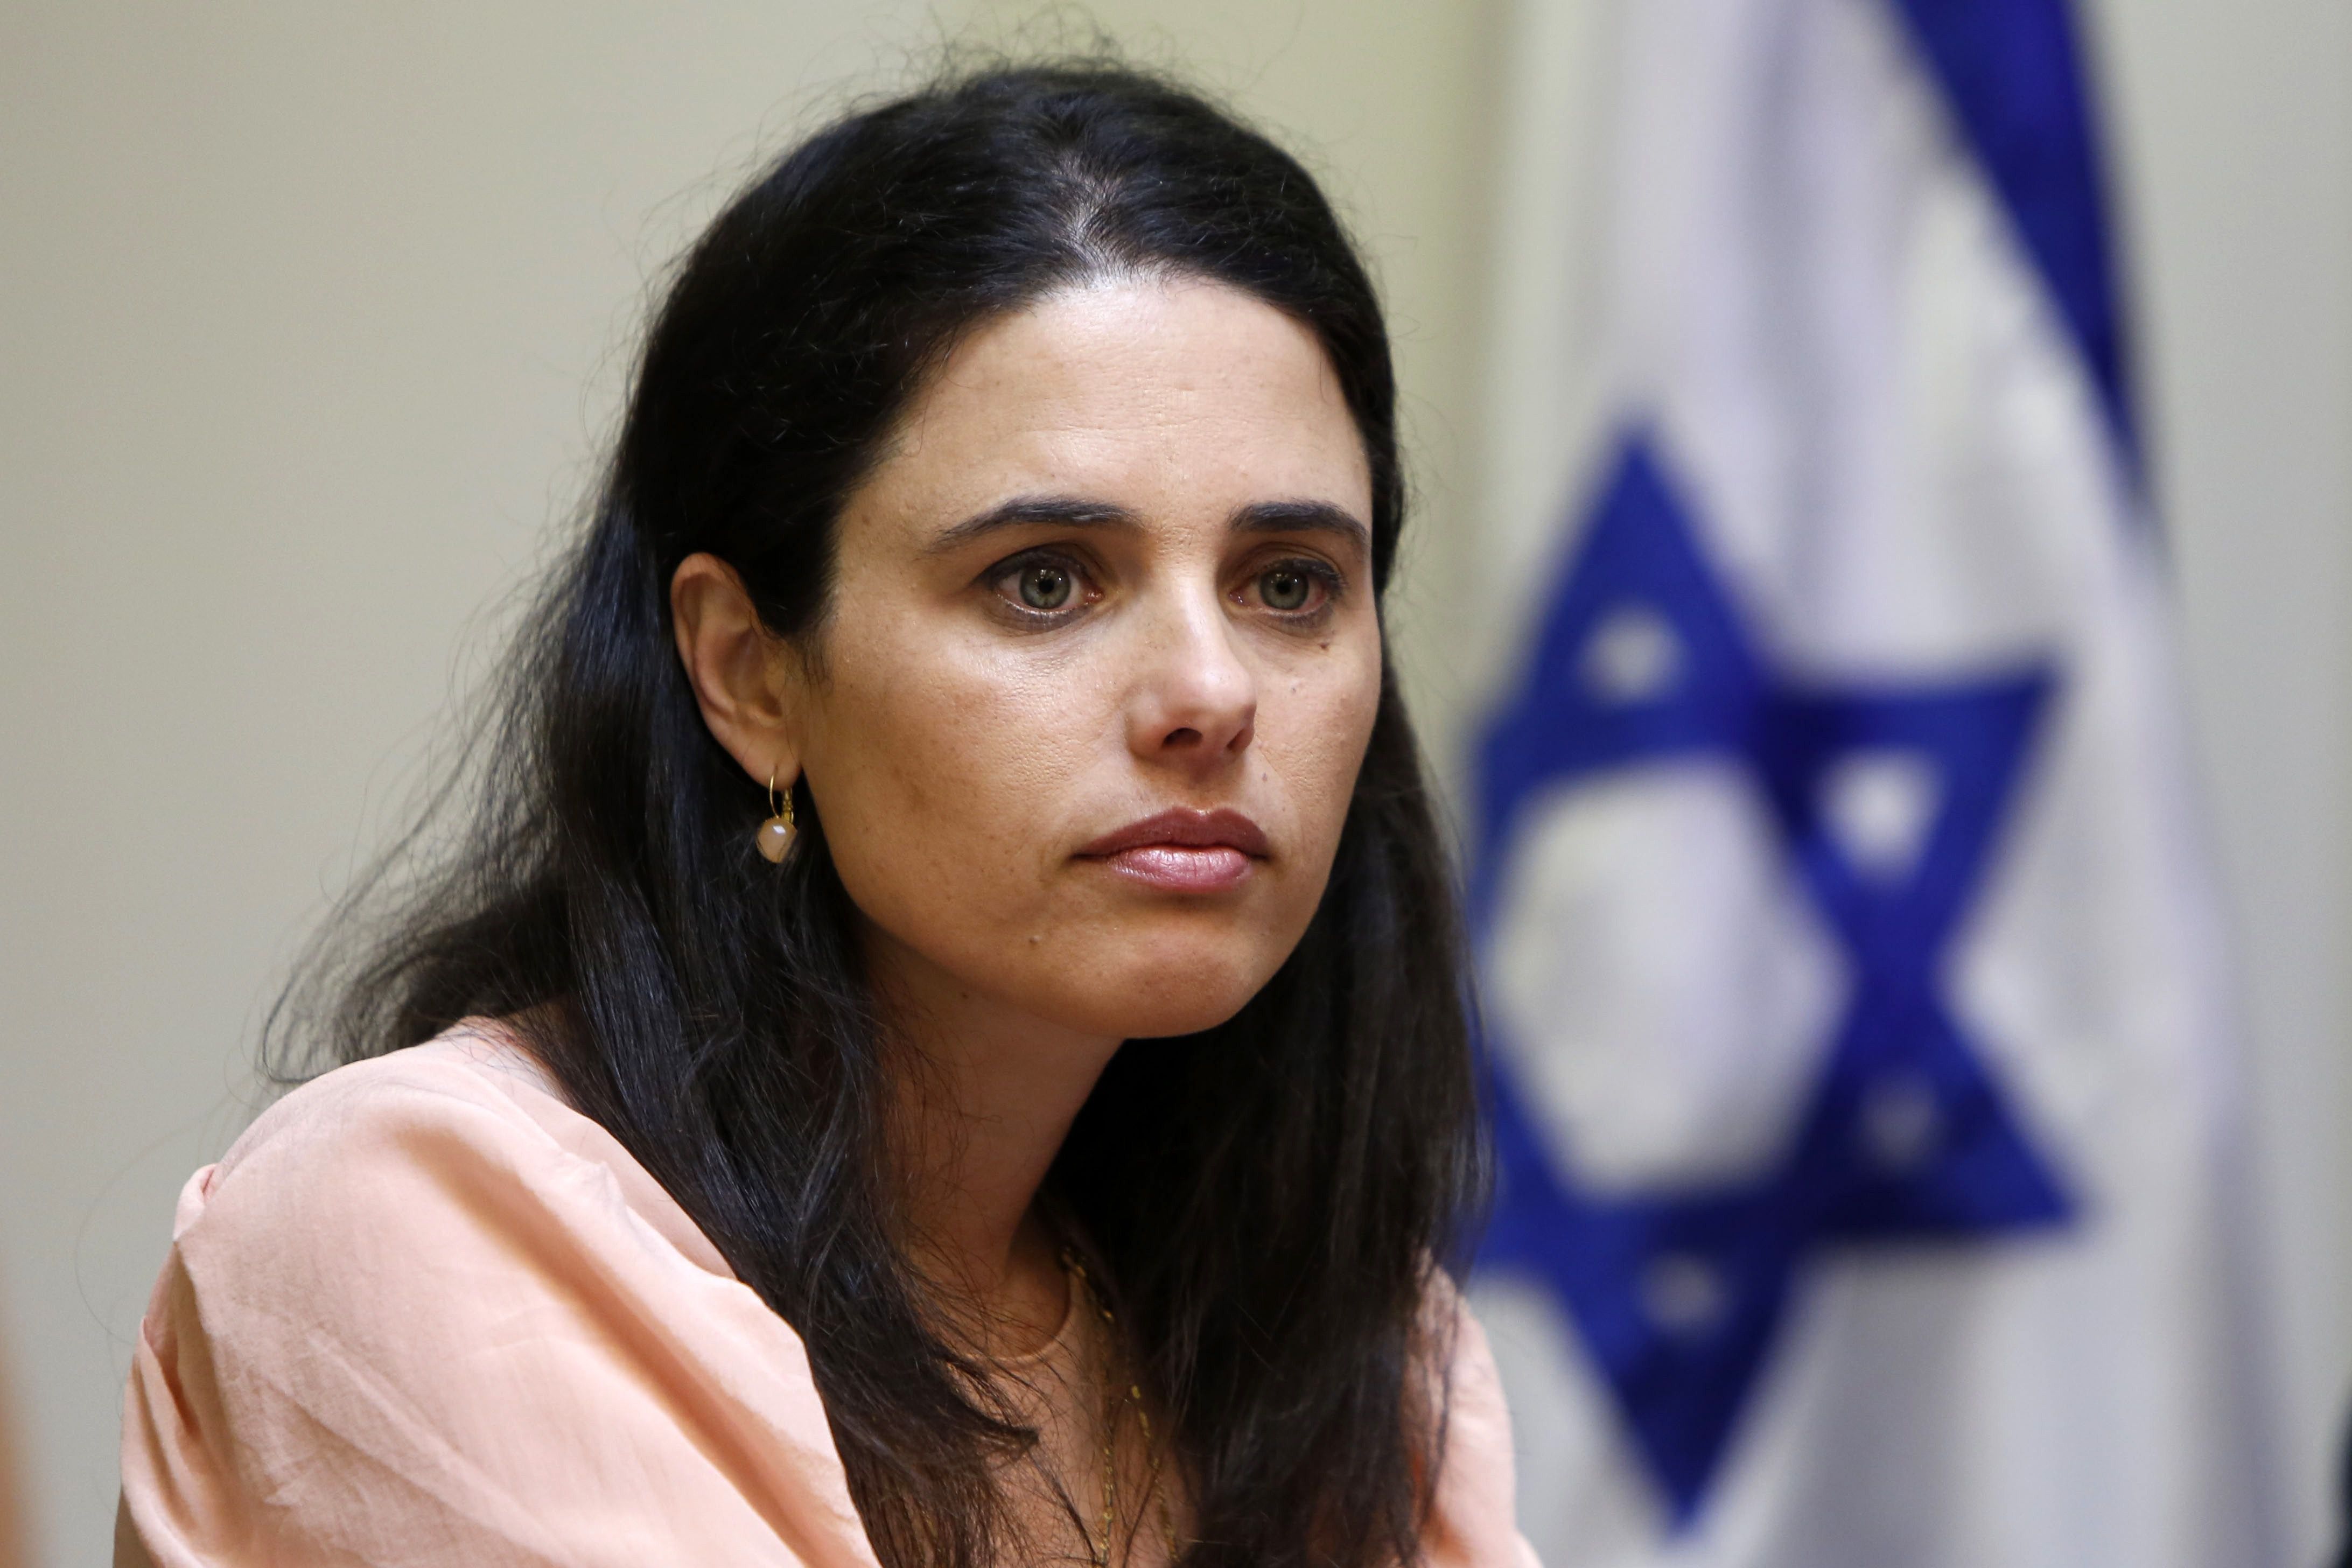 وزیر دادگستری رژیم صهیونیستی: اسرائیل باید یهودی بماند حتی به بهای نقض حقوق بشر